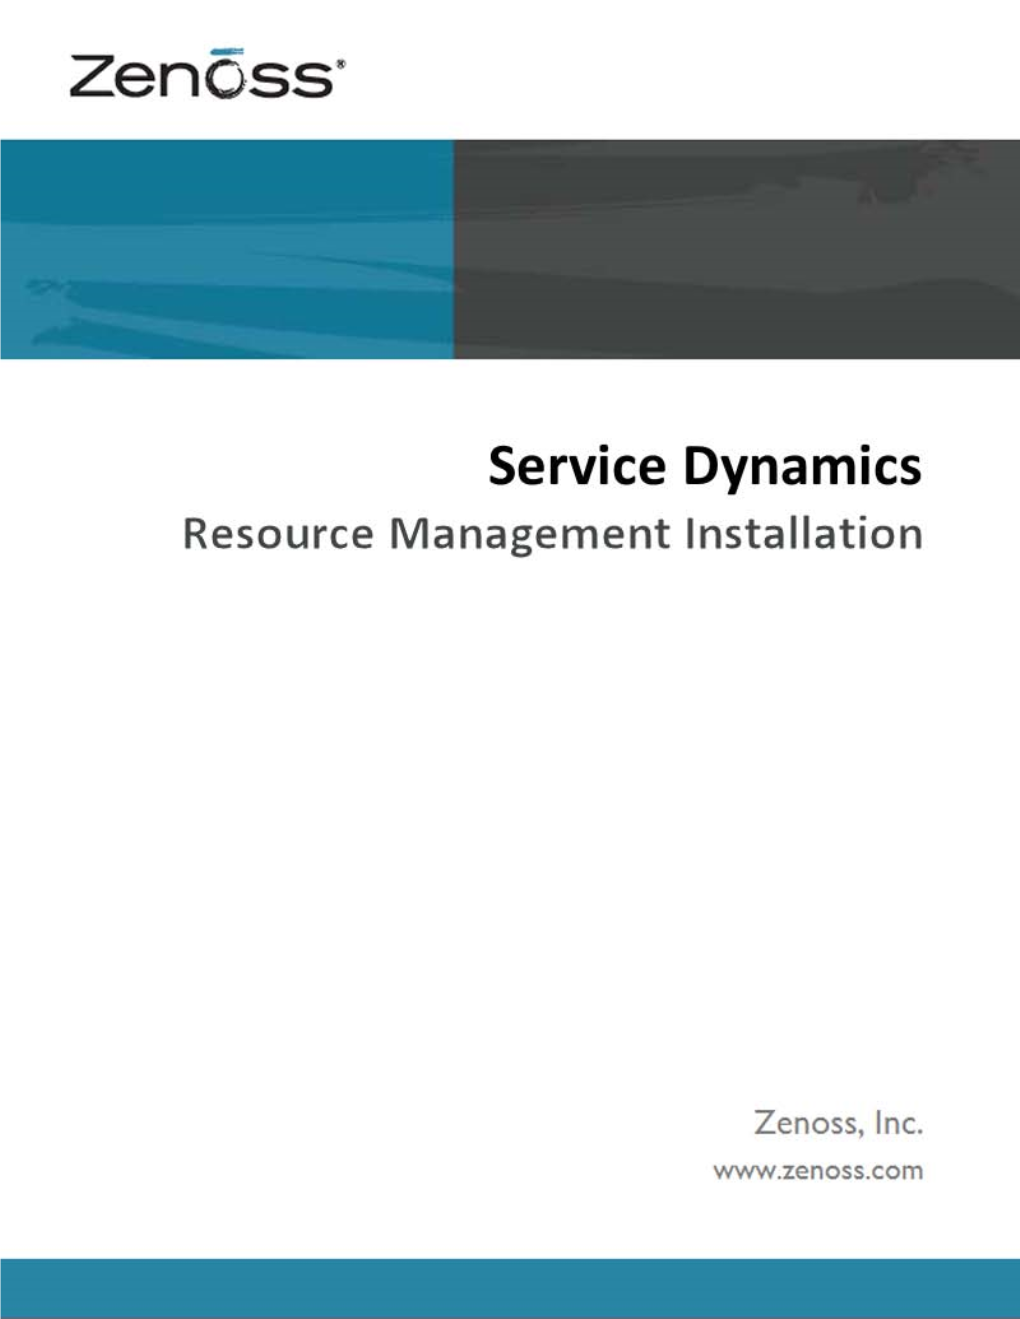 Zenoss Service Dynamics Resource Management Installation Copyright © 2011 Zenoss, Inc., 275 West St